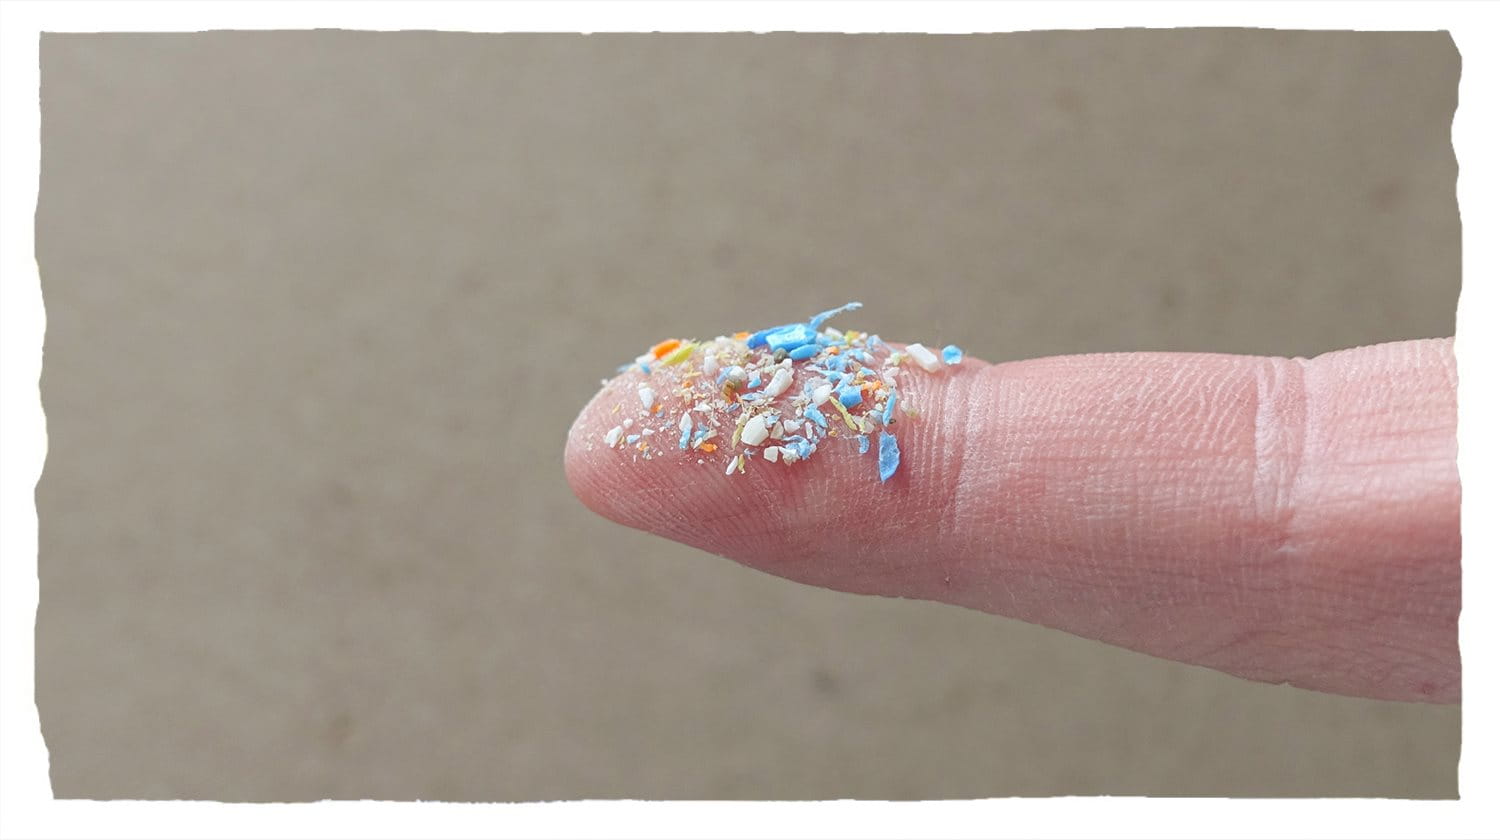 Fragments de plastique visibles sur le bout d’un doigt